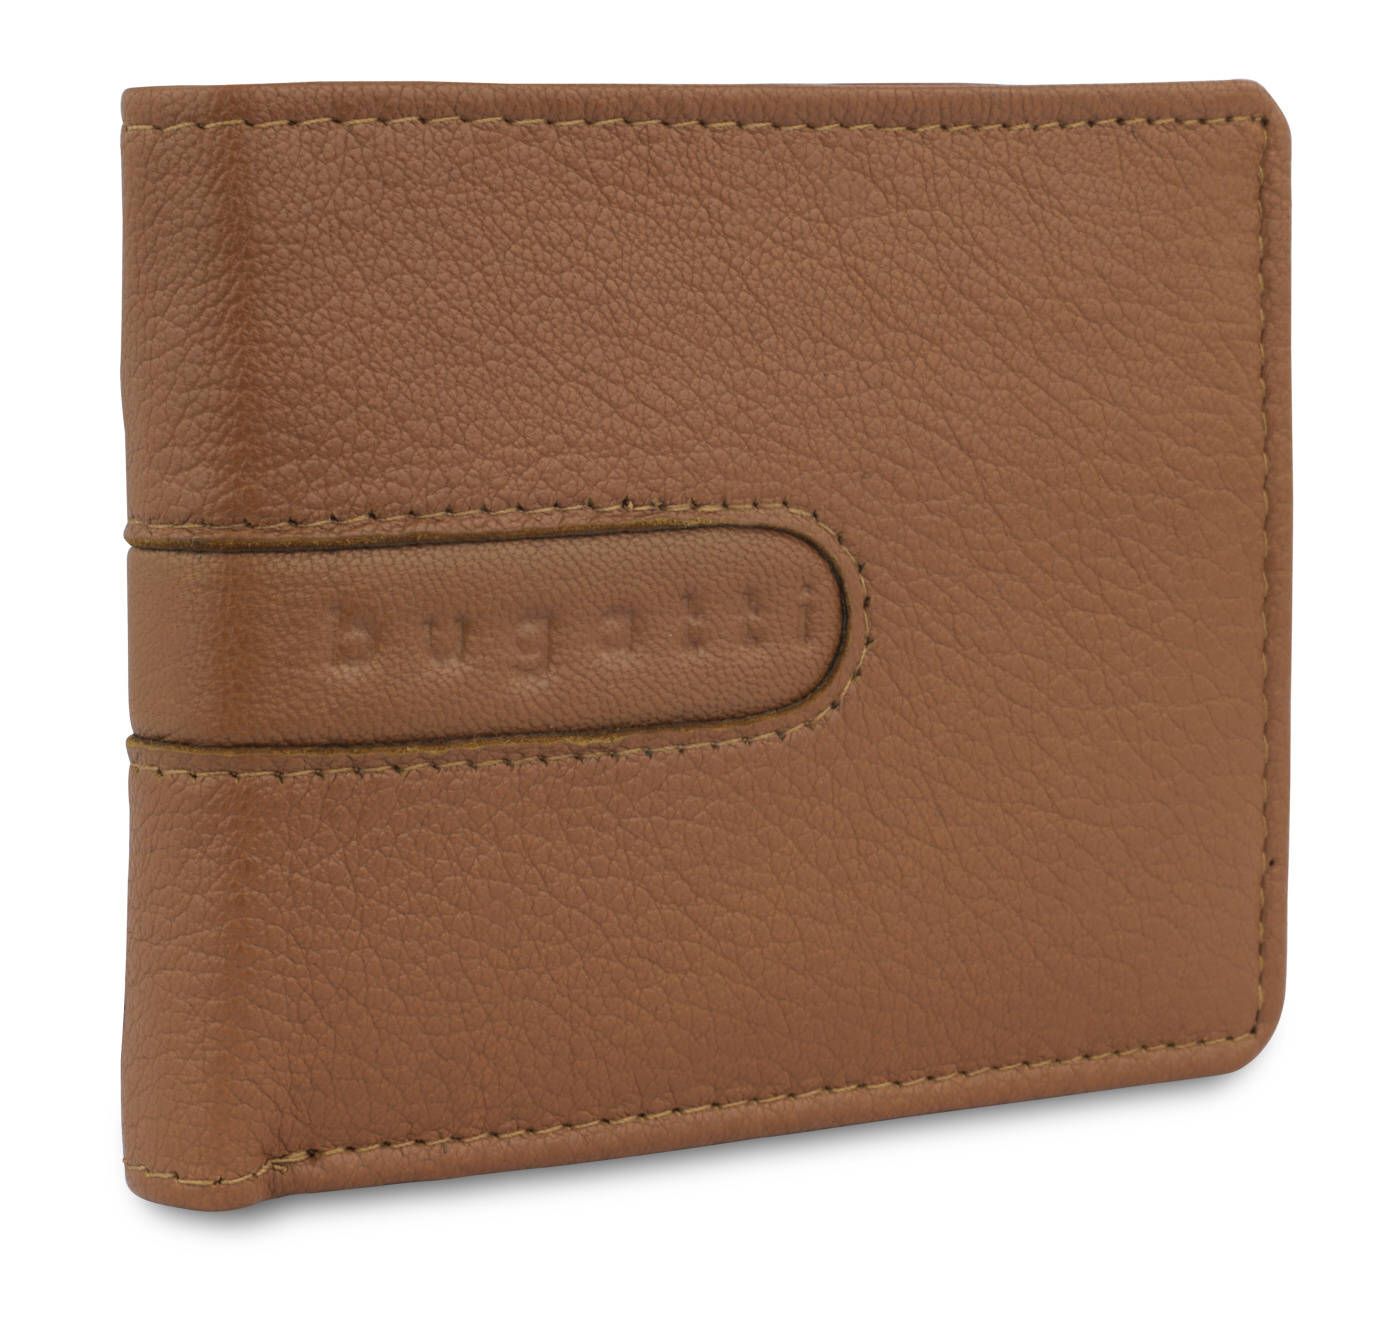 Pánská peněženka Bugatti Bomba coin flap 491350-07 tabáková